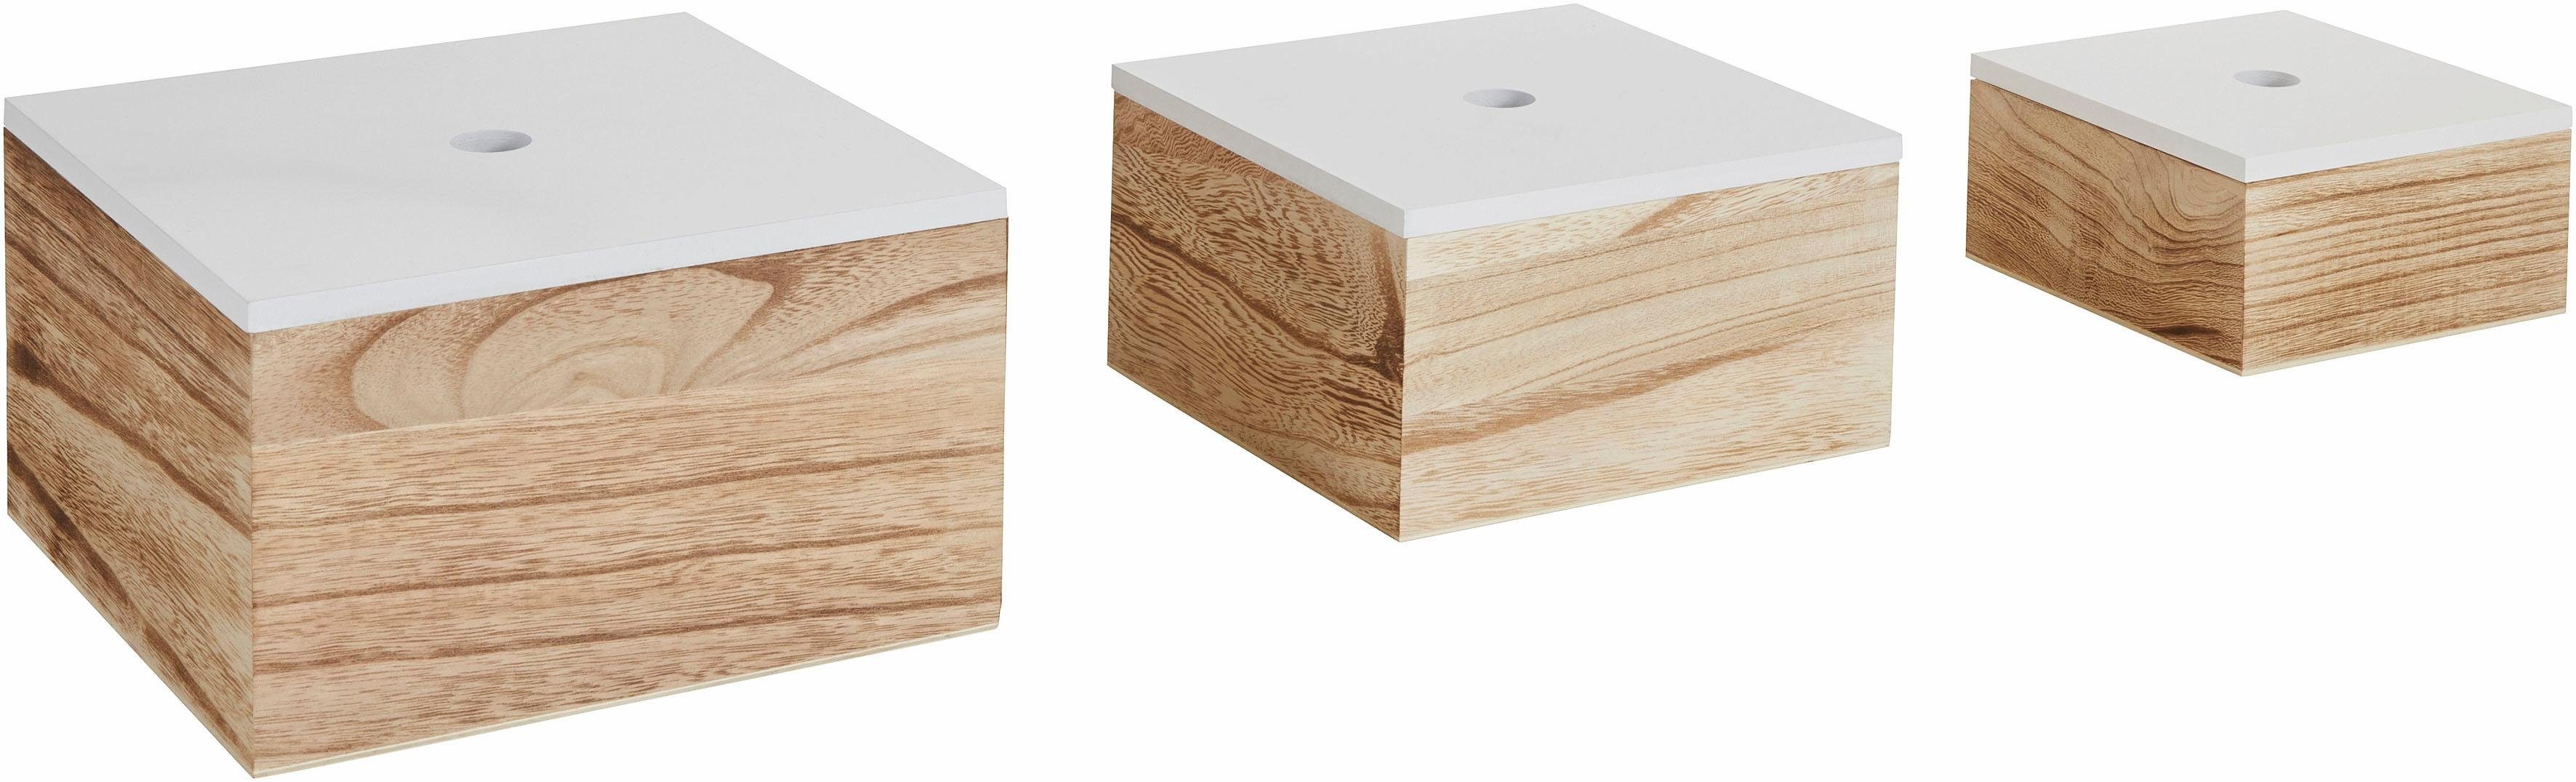 Zeller Present Aufbewahrungsbox, 3er Set, Holz, weiß/natur online kaufen |  OTTO